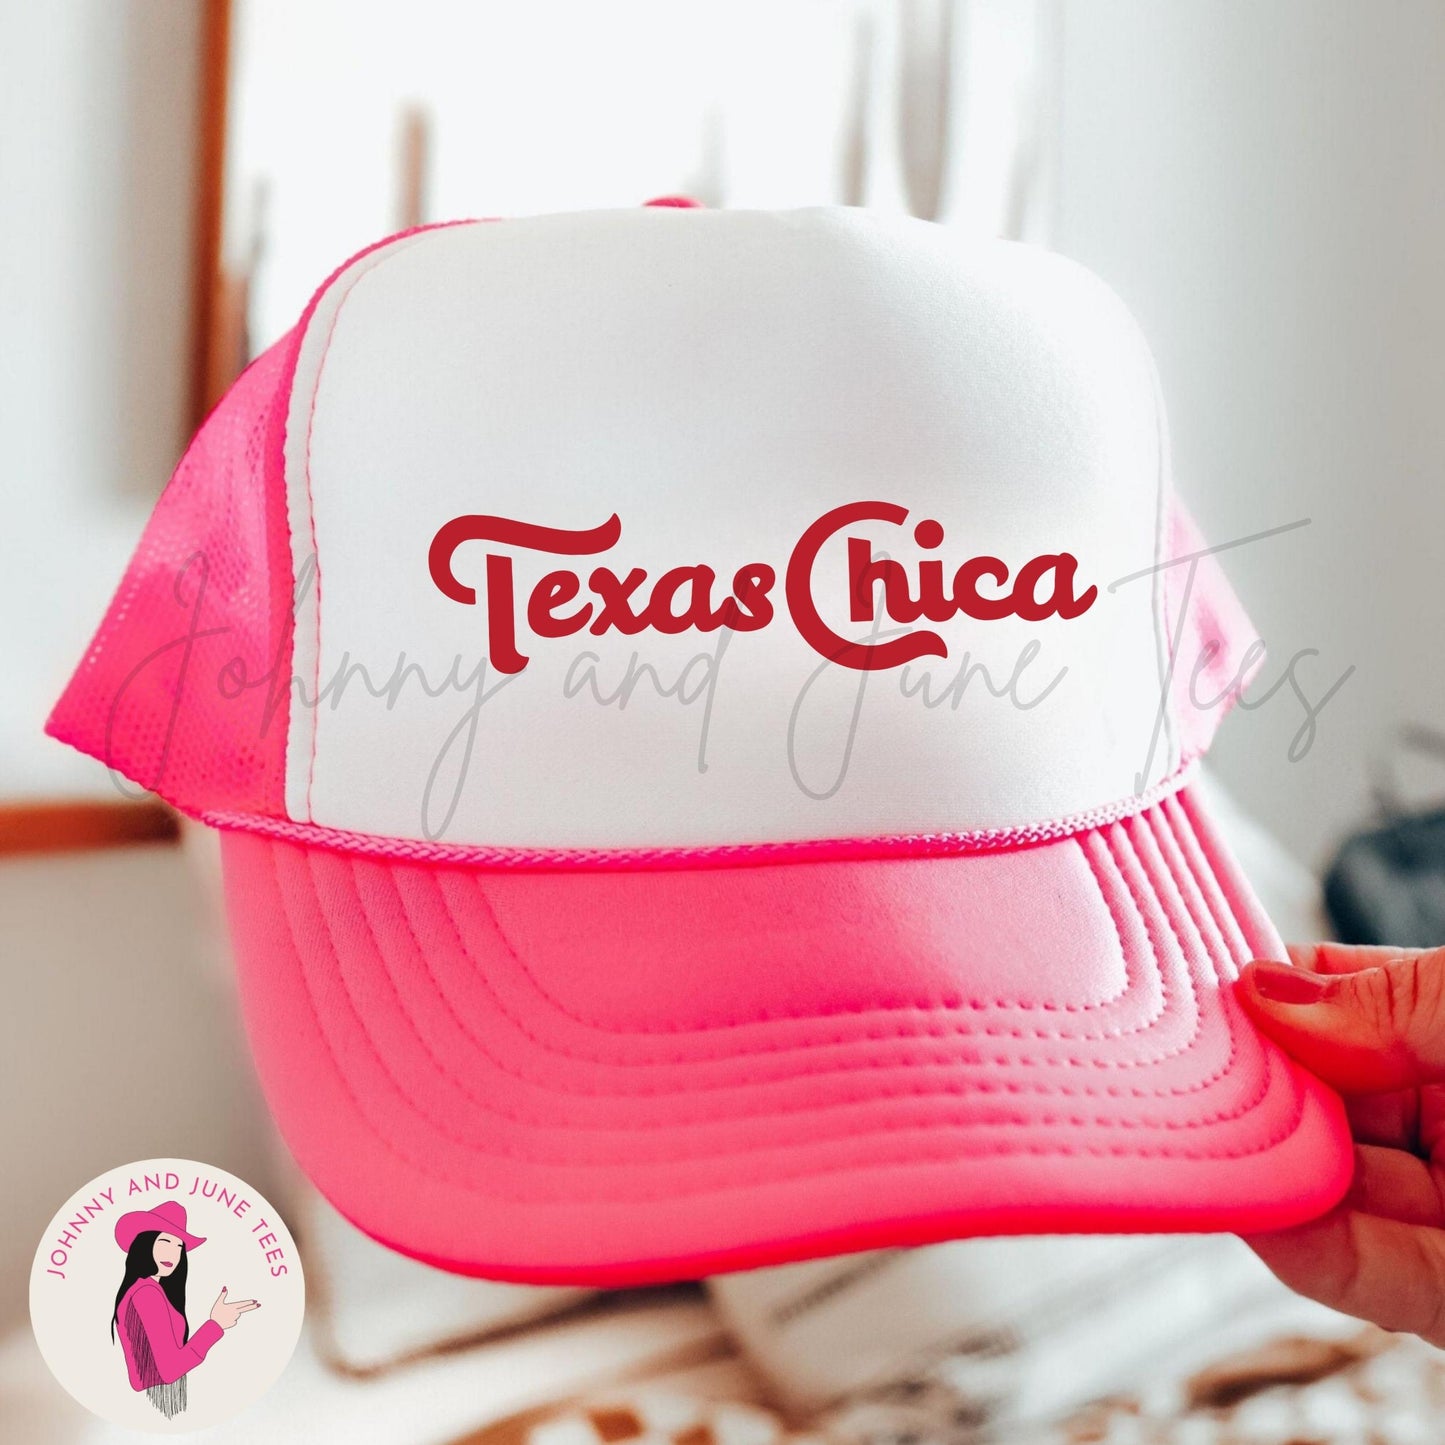 Texas Chica Topo Chico Style Retro Trucker Cap, Trucker Hat